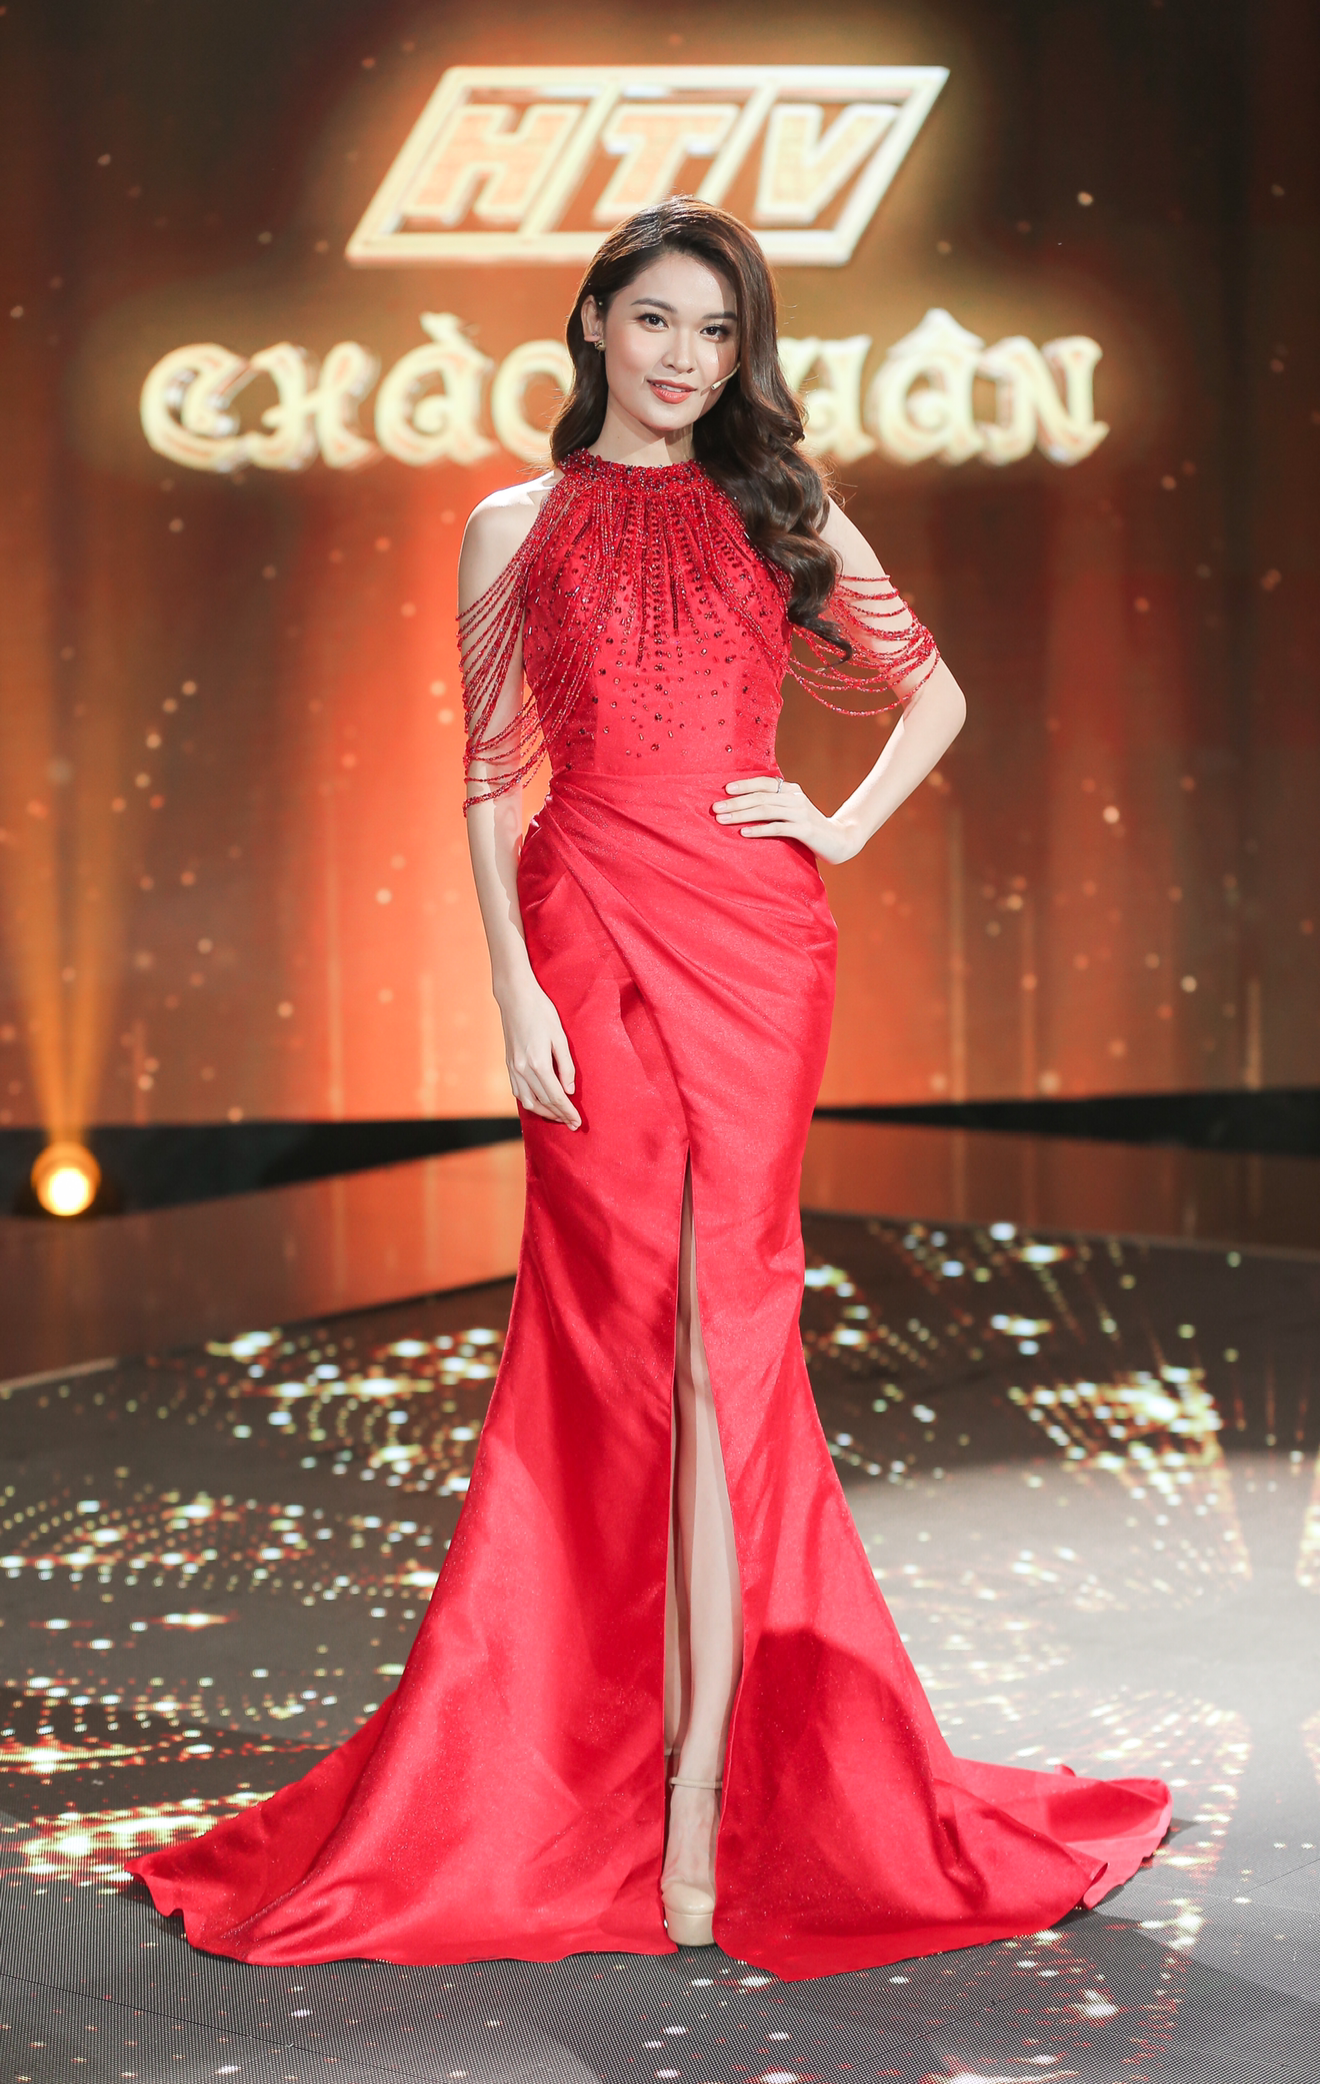 Trên sân khấu Thuỳ Dung diện váy của nhà thiết kế Brian Võ, tôn vai trần và sắc vóc nổi bật. Cô là Á hậu Việt Nam 2016 và theo đuổi công việc MC chuyên nghiệp gần ba năm qua.